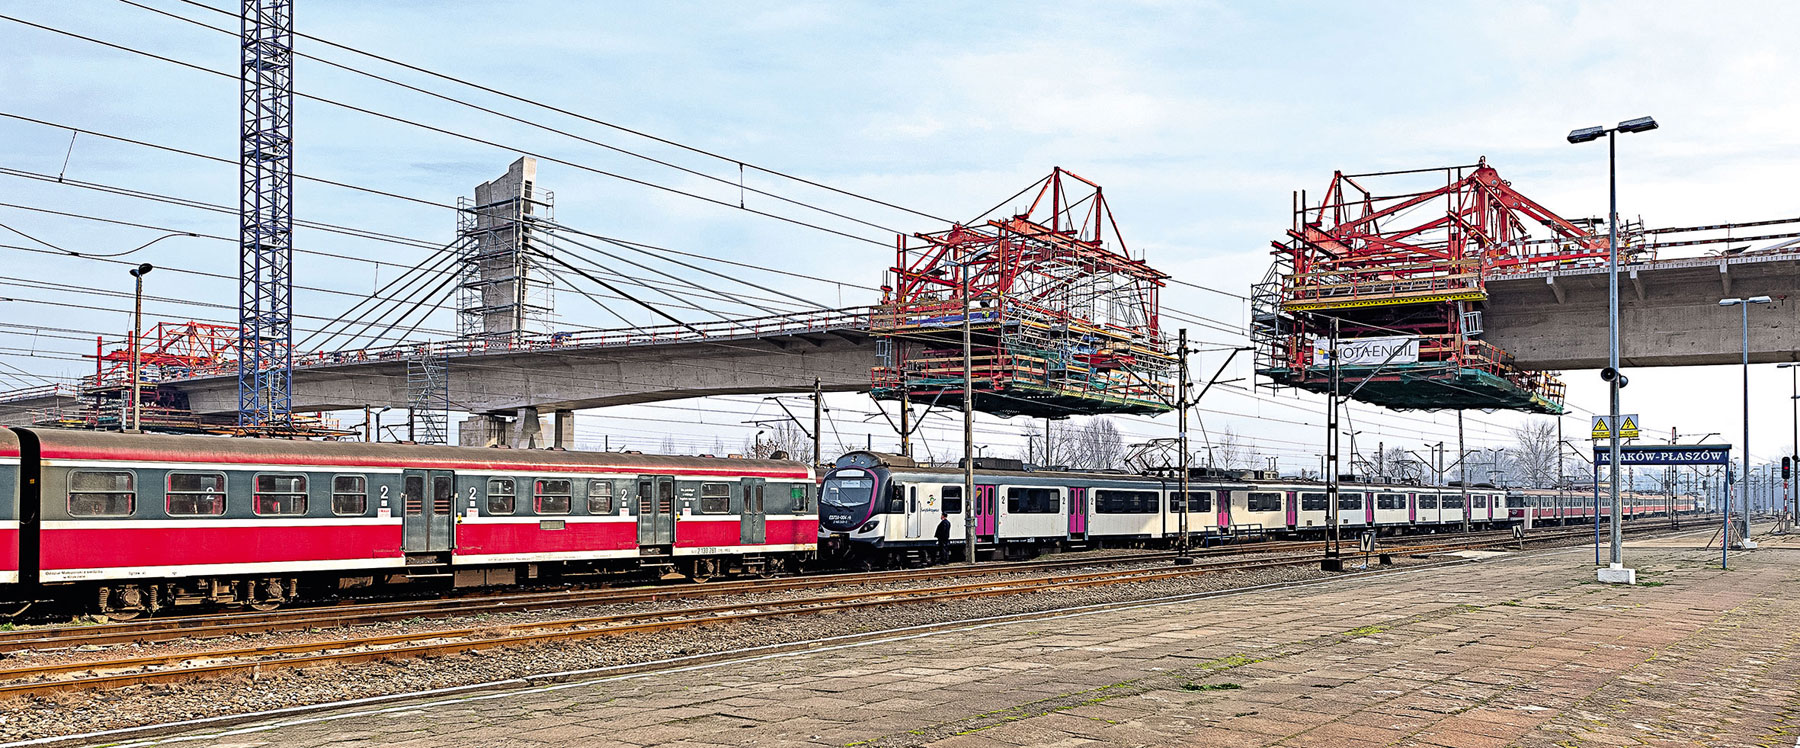 Přemostění železničního uzlu Krakov-Plaszow, dlouhé 252 m, bylo vybudováno s pomocí 4 zařízení pro letmou betonáž VARIOKIT.